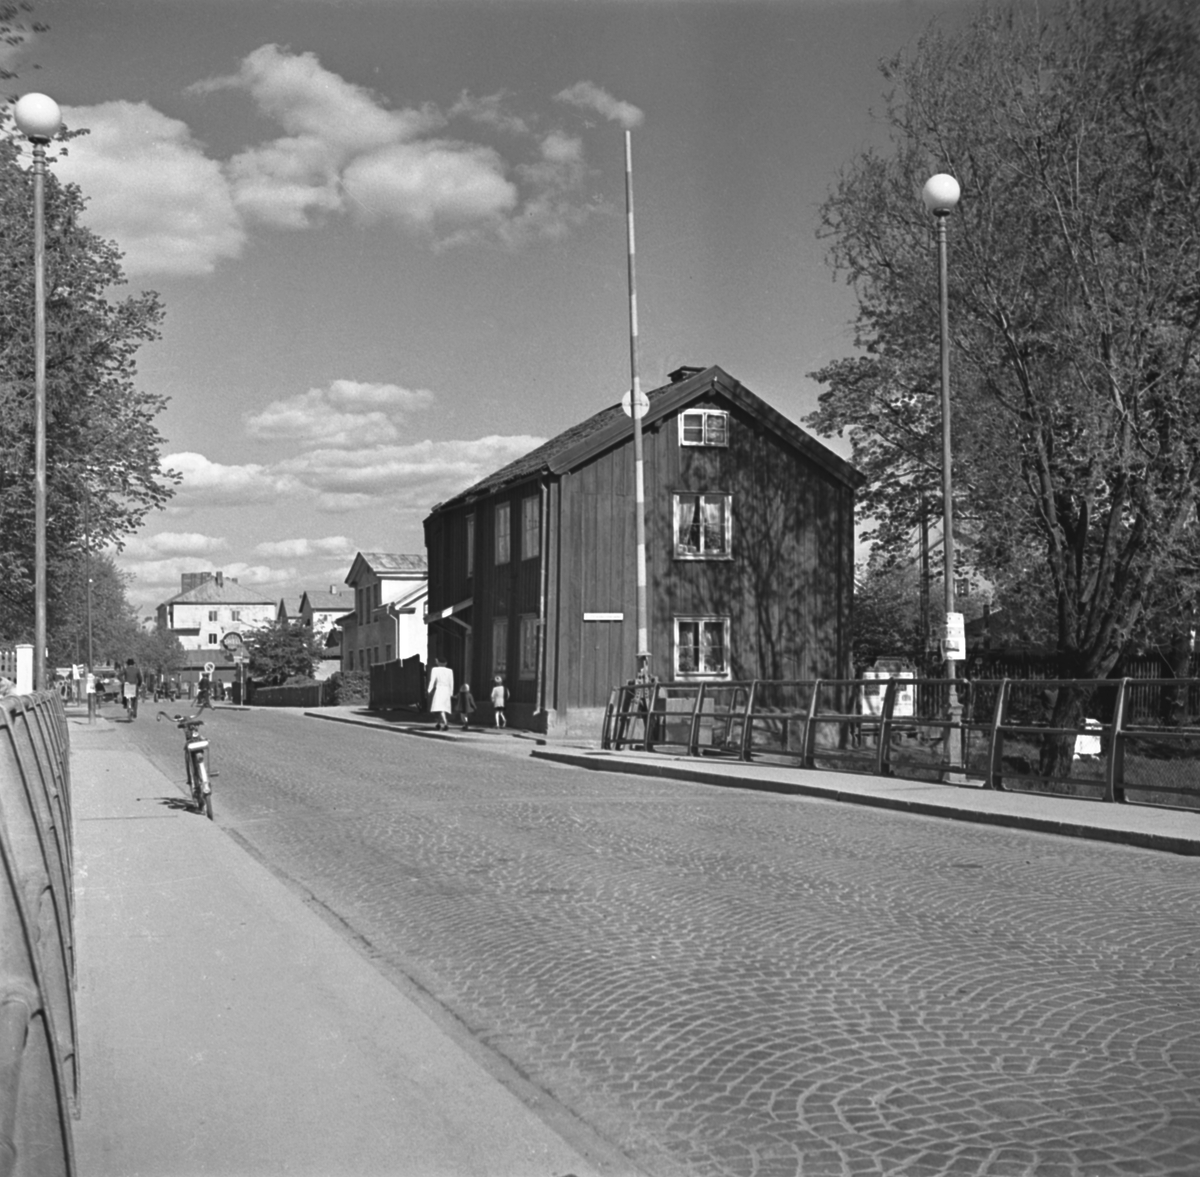 Motiv från Stångebro i Linköping med blicken vänd österut. Till höger platsen för stadens östra tull. Byggnaden i blickfånget uppfördes i slutet av 1830-talet som ersatte då själva tullhuset. Trots att stadstullen tagits bort nästan trettio år tidigare fick den nya byggnaden i folkmun ärva sin föregångares namn. År 1832 flyttade urmakaren Erik Fougelberg (1777-1852) in med sin familj. Efter några år ersatte han den gamla tullstugan med huset på bilden. Odaterad bild från omkring 1950, kort före man lät flytta byggnaden till friluftsmuseet Gamla Linköping.